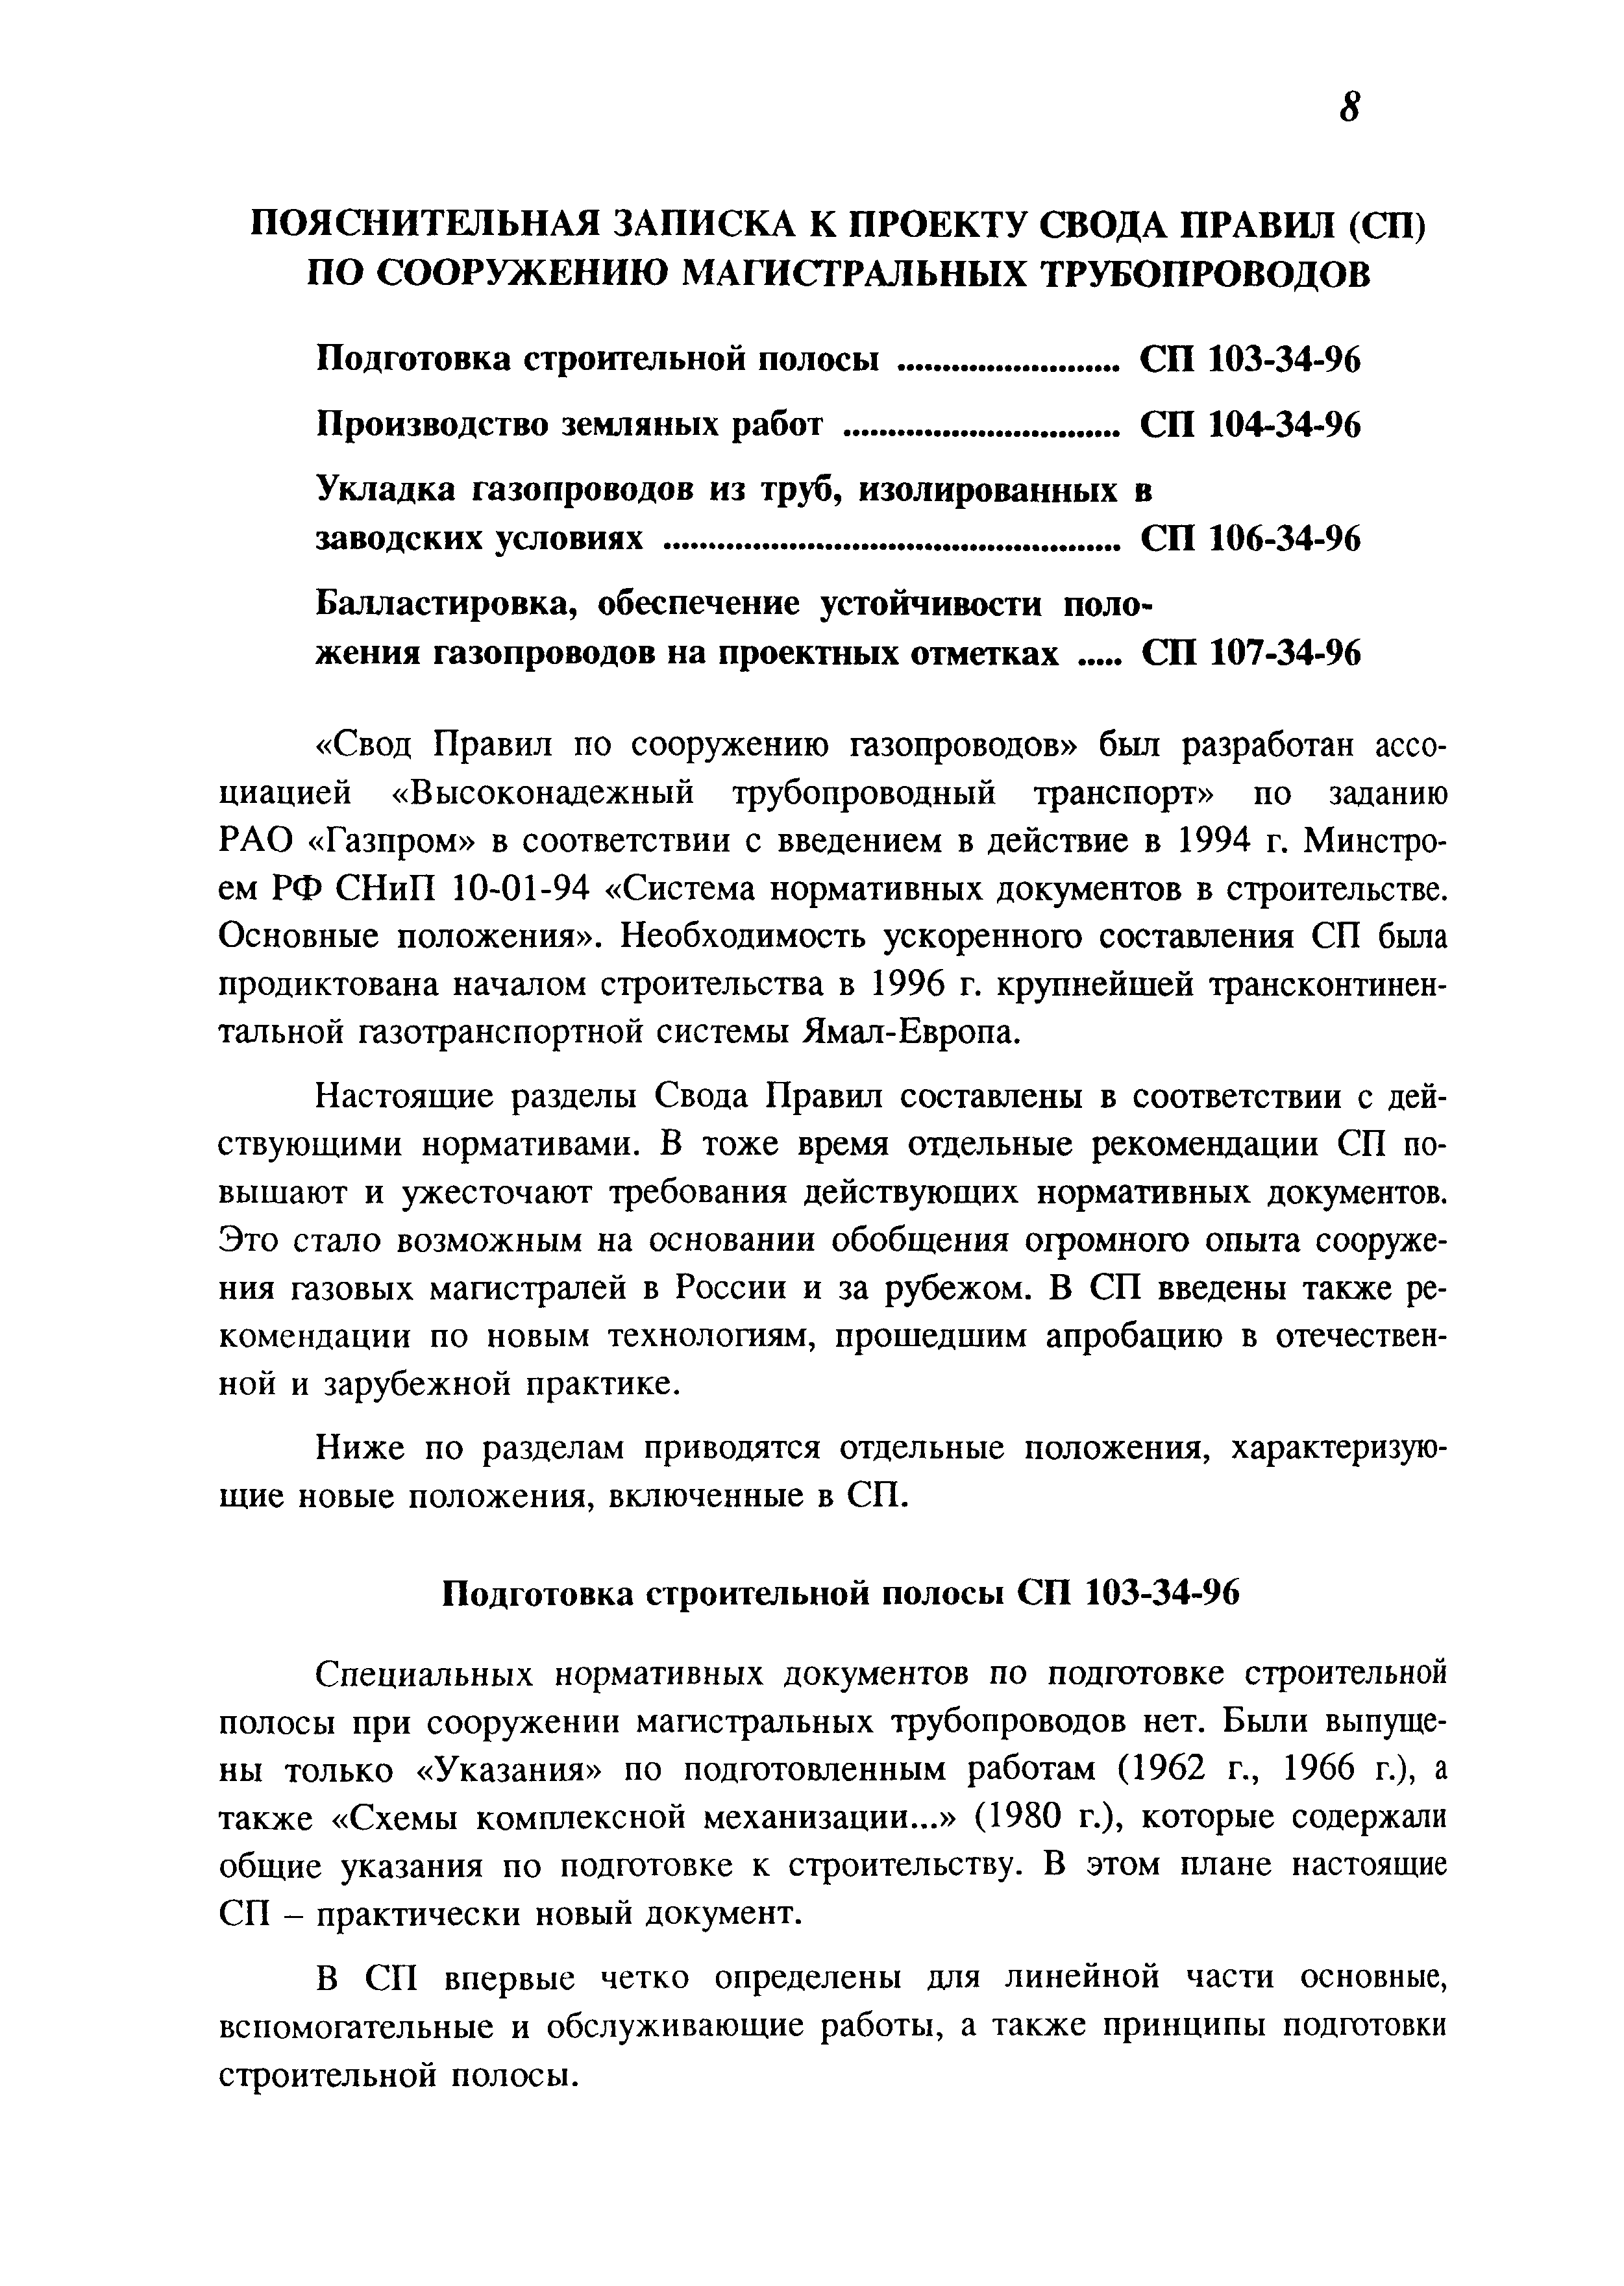 СП 107-34-96